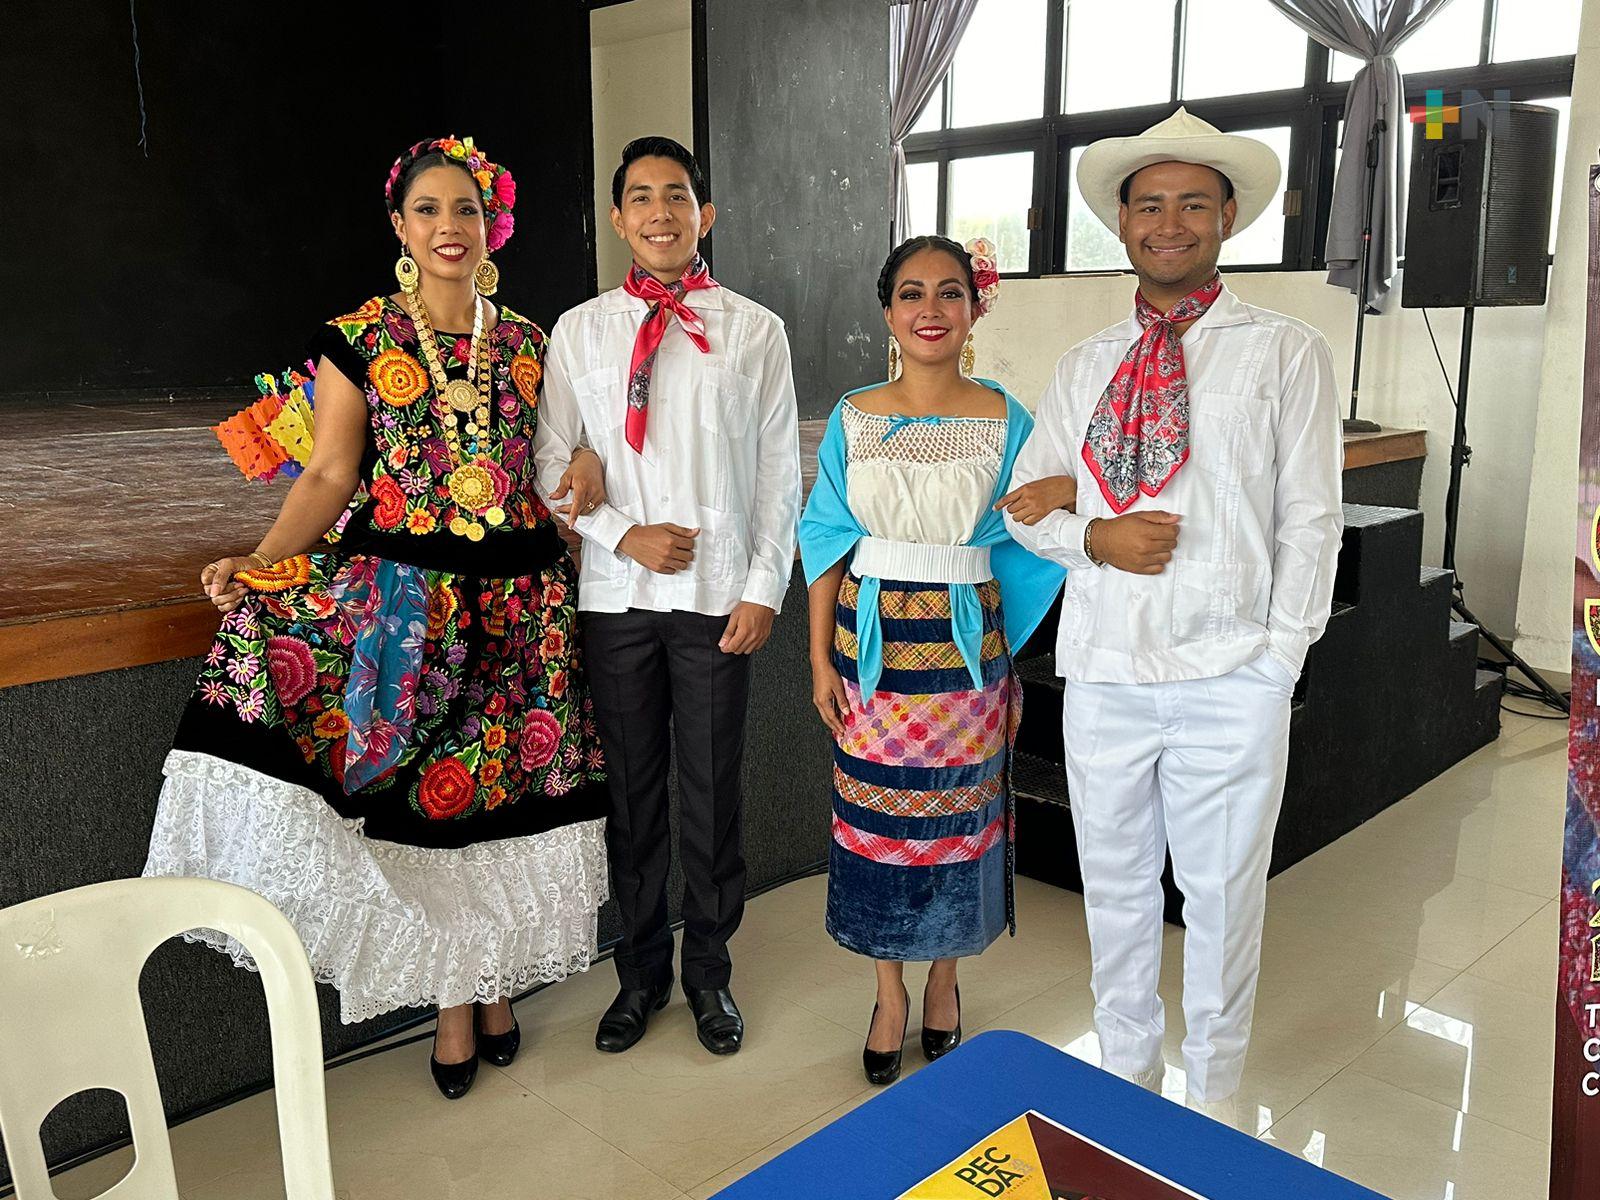 Espectáculo musical «Suristmo» muestra convergencia cultural de Veracruz y Oaxaca